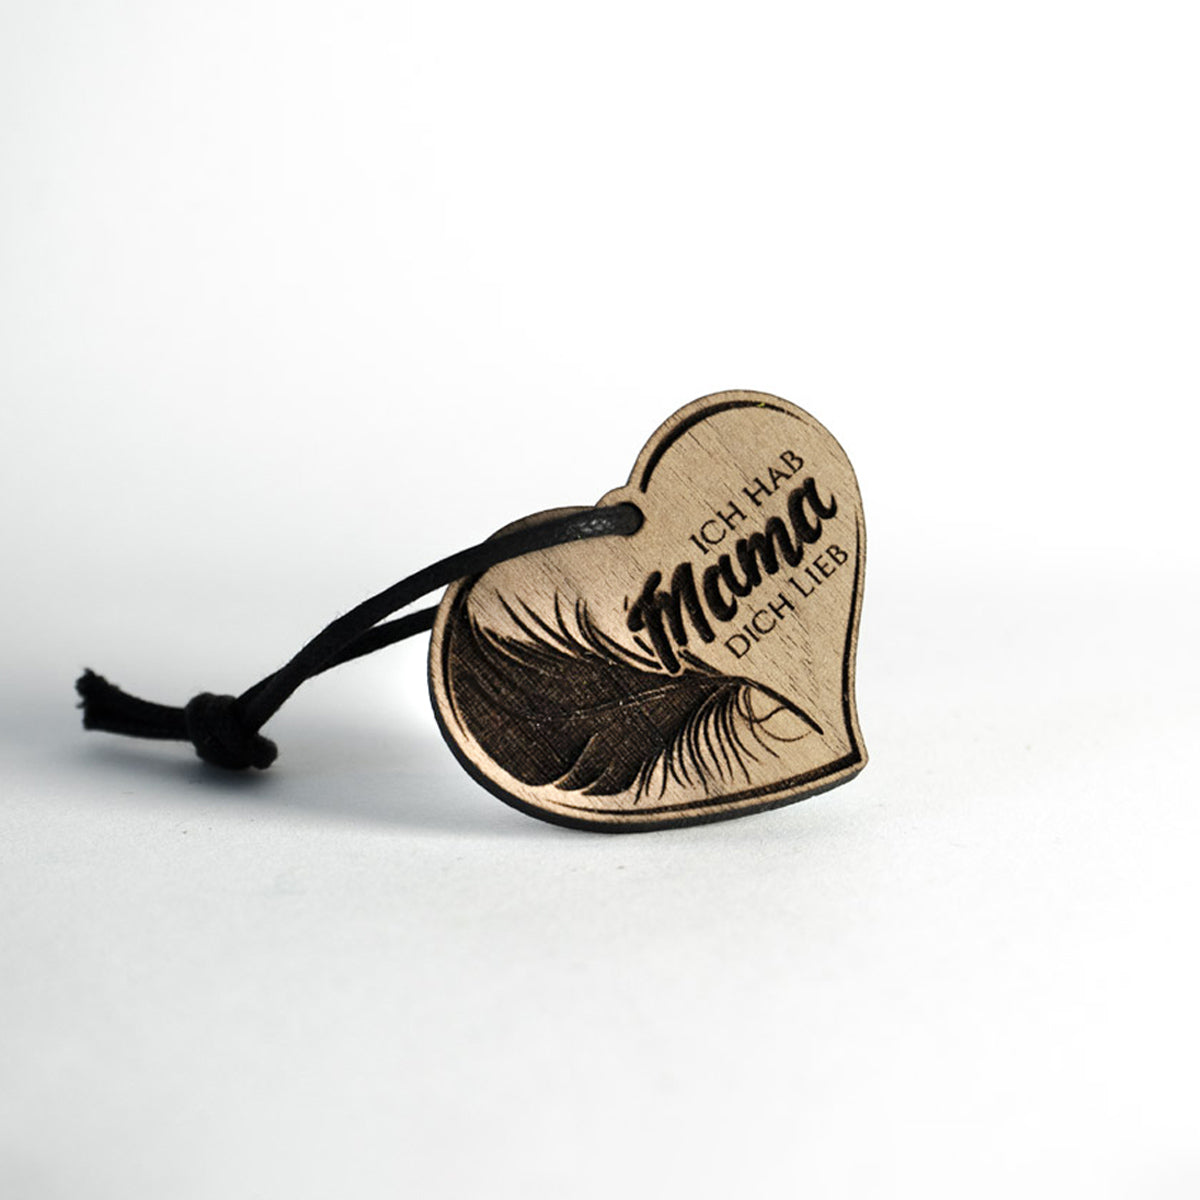 Schlüsselanhänger "Ich hab dich lieb Mama" | Herz mit Feder aus Holz